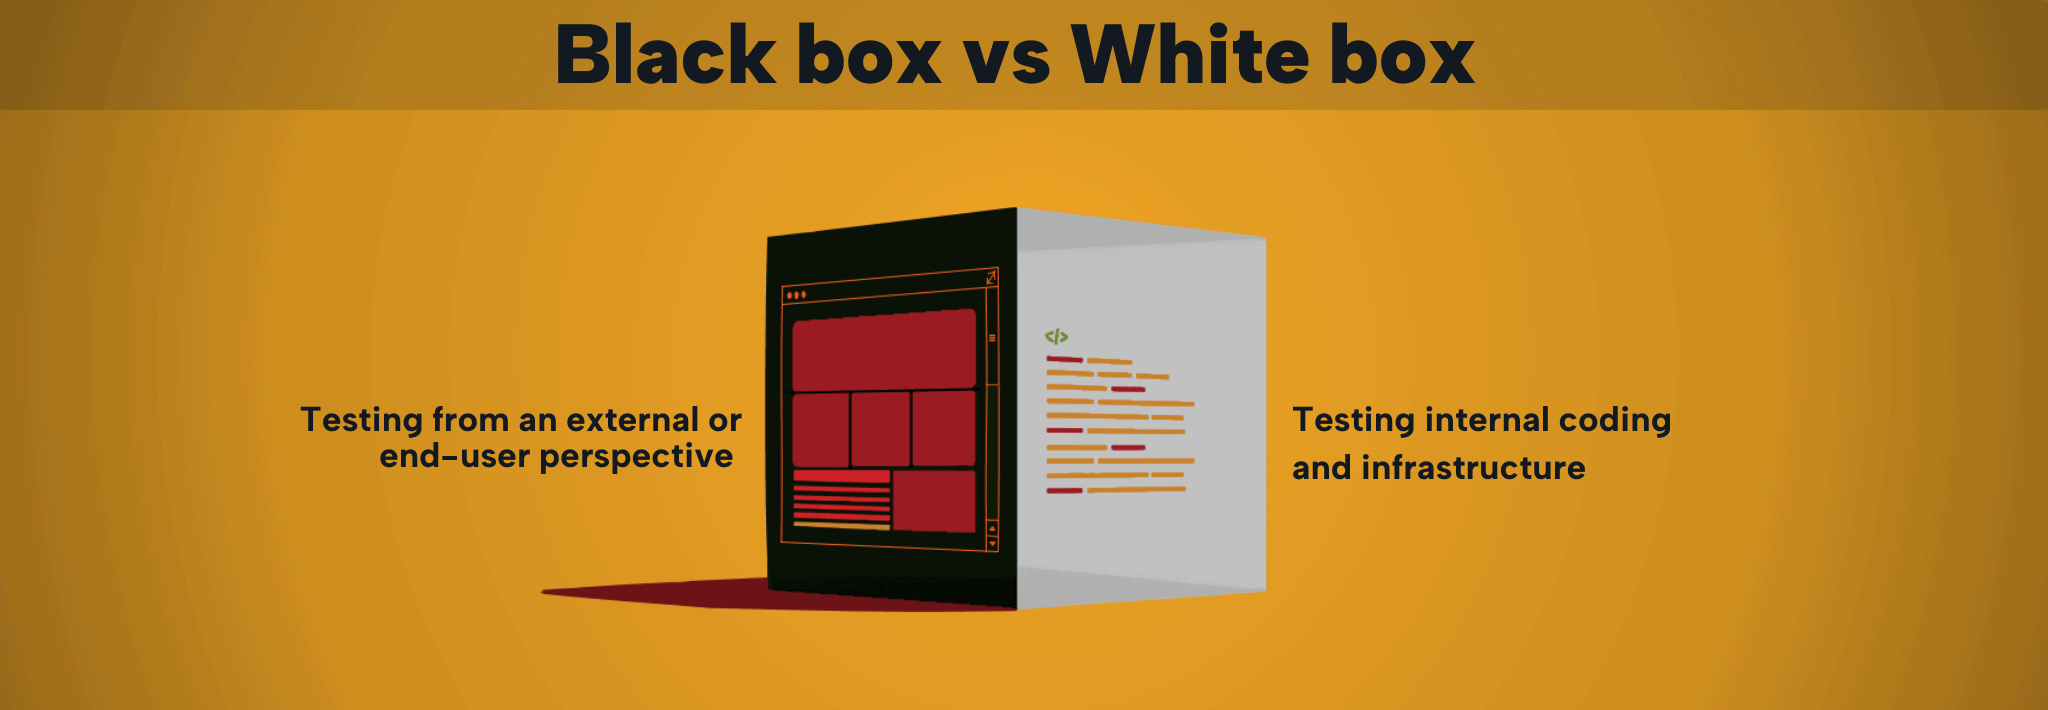 Black box vs White box testing graphic